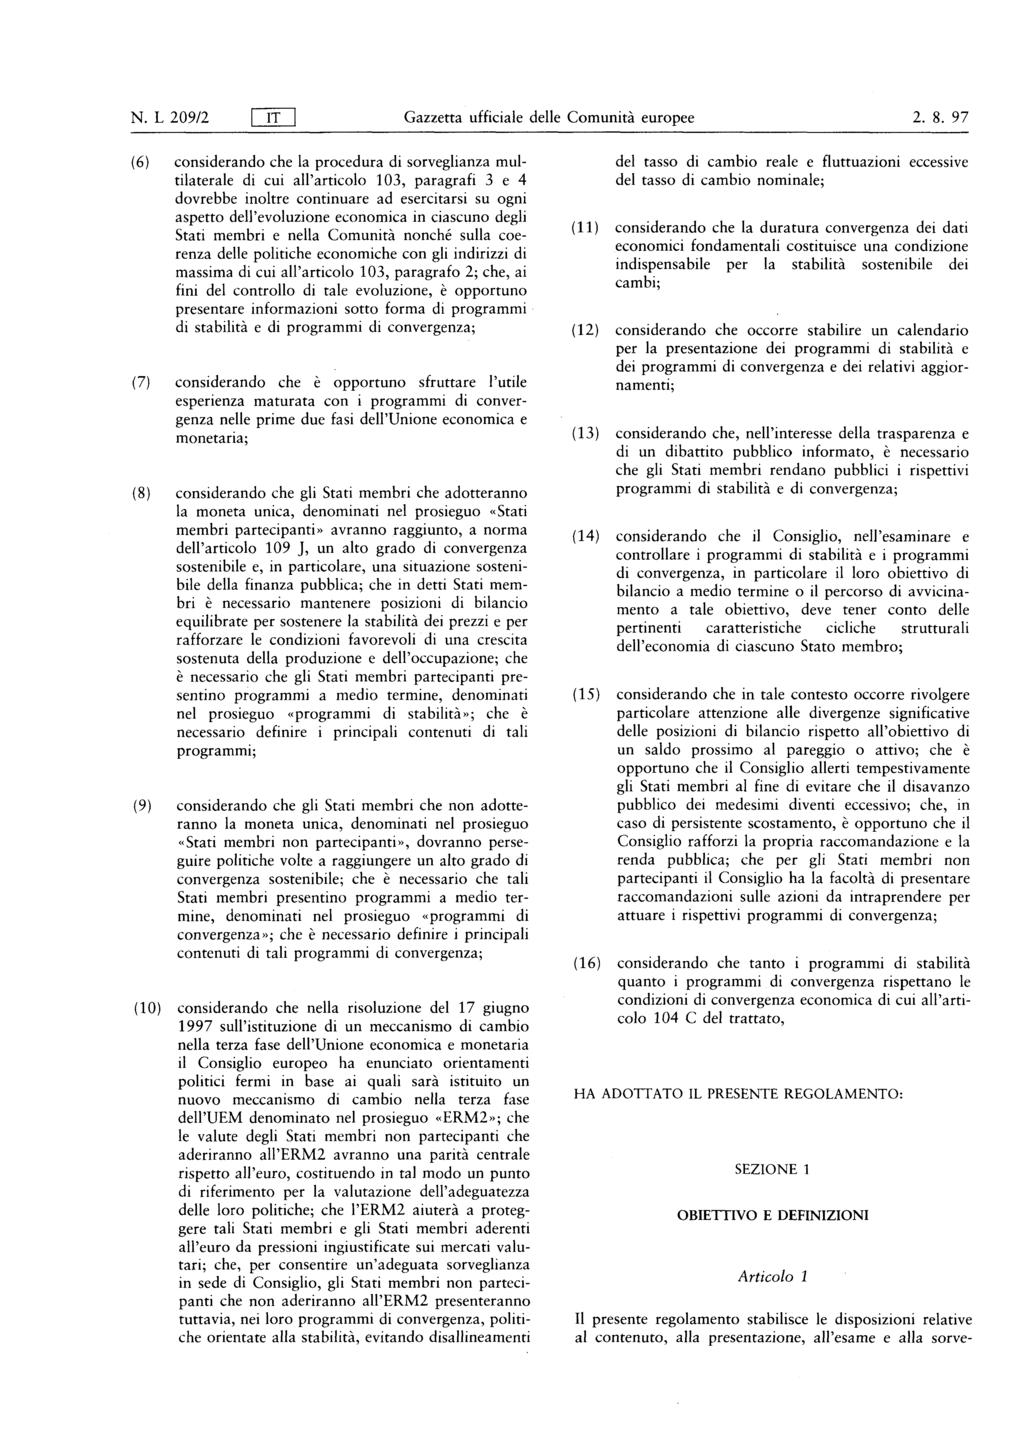 N L 209/2 flt Gazzetta ufficiale delle Comunità europee 2 8 97 ( 6 ) considerando che la procedura di sorveglianza multilaterale di cui all' articolo 103, paragrafi 3 e 4 dovrebbe inoltre continuare